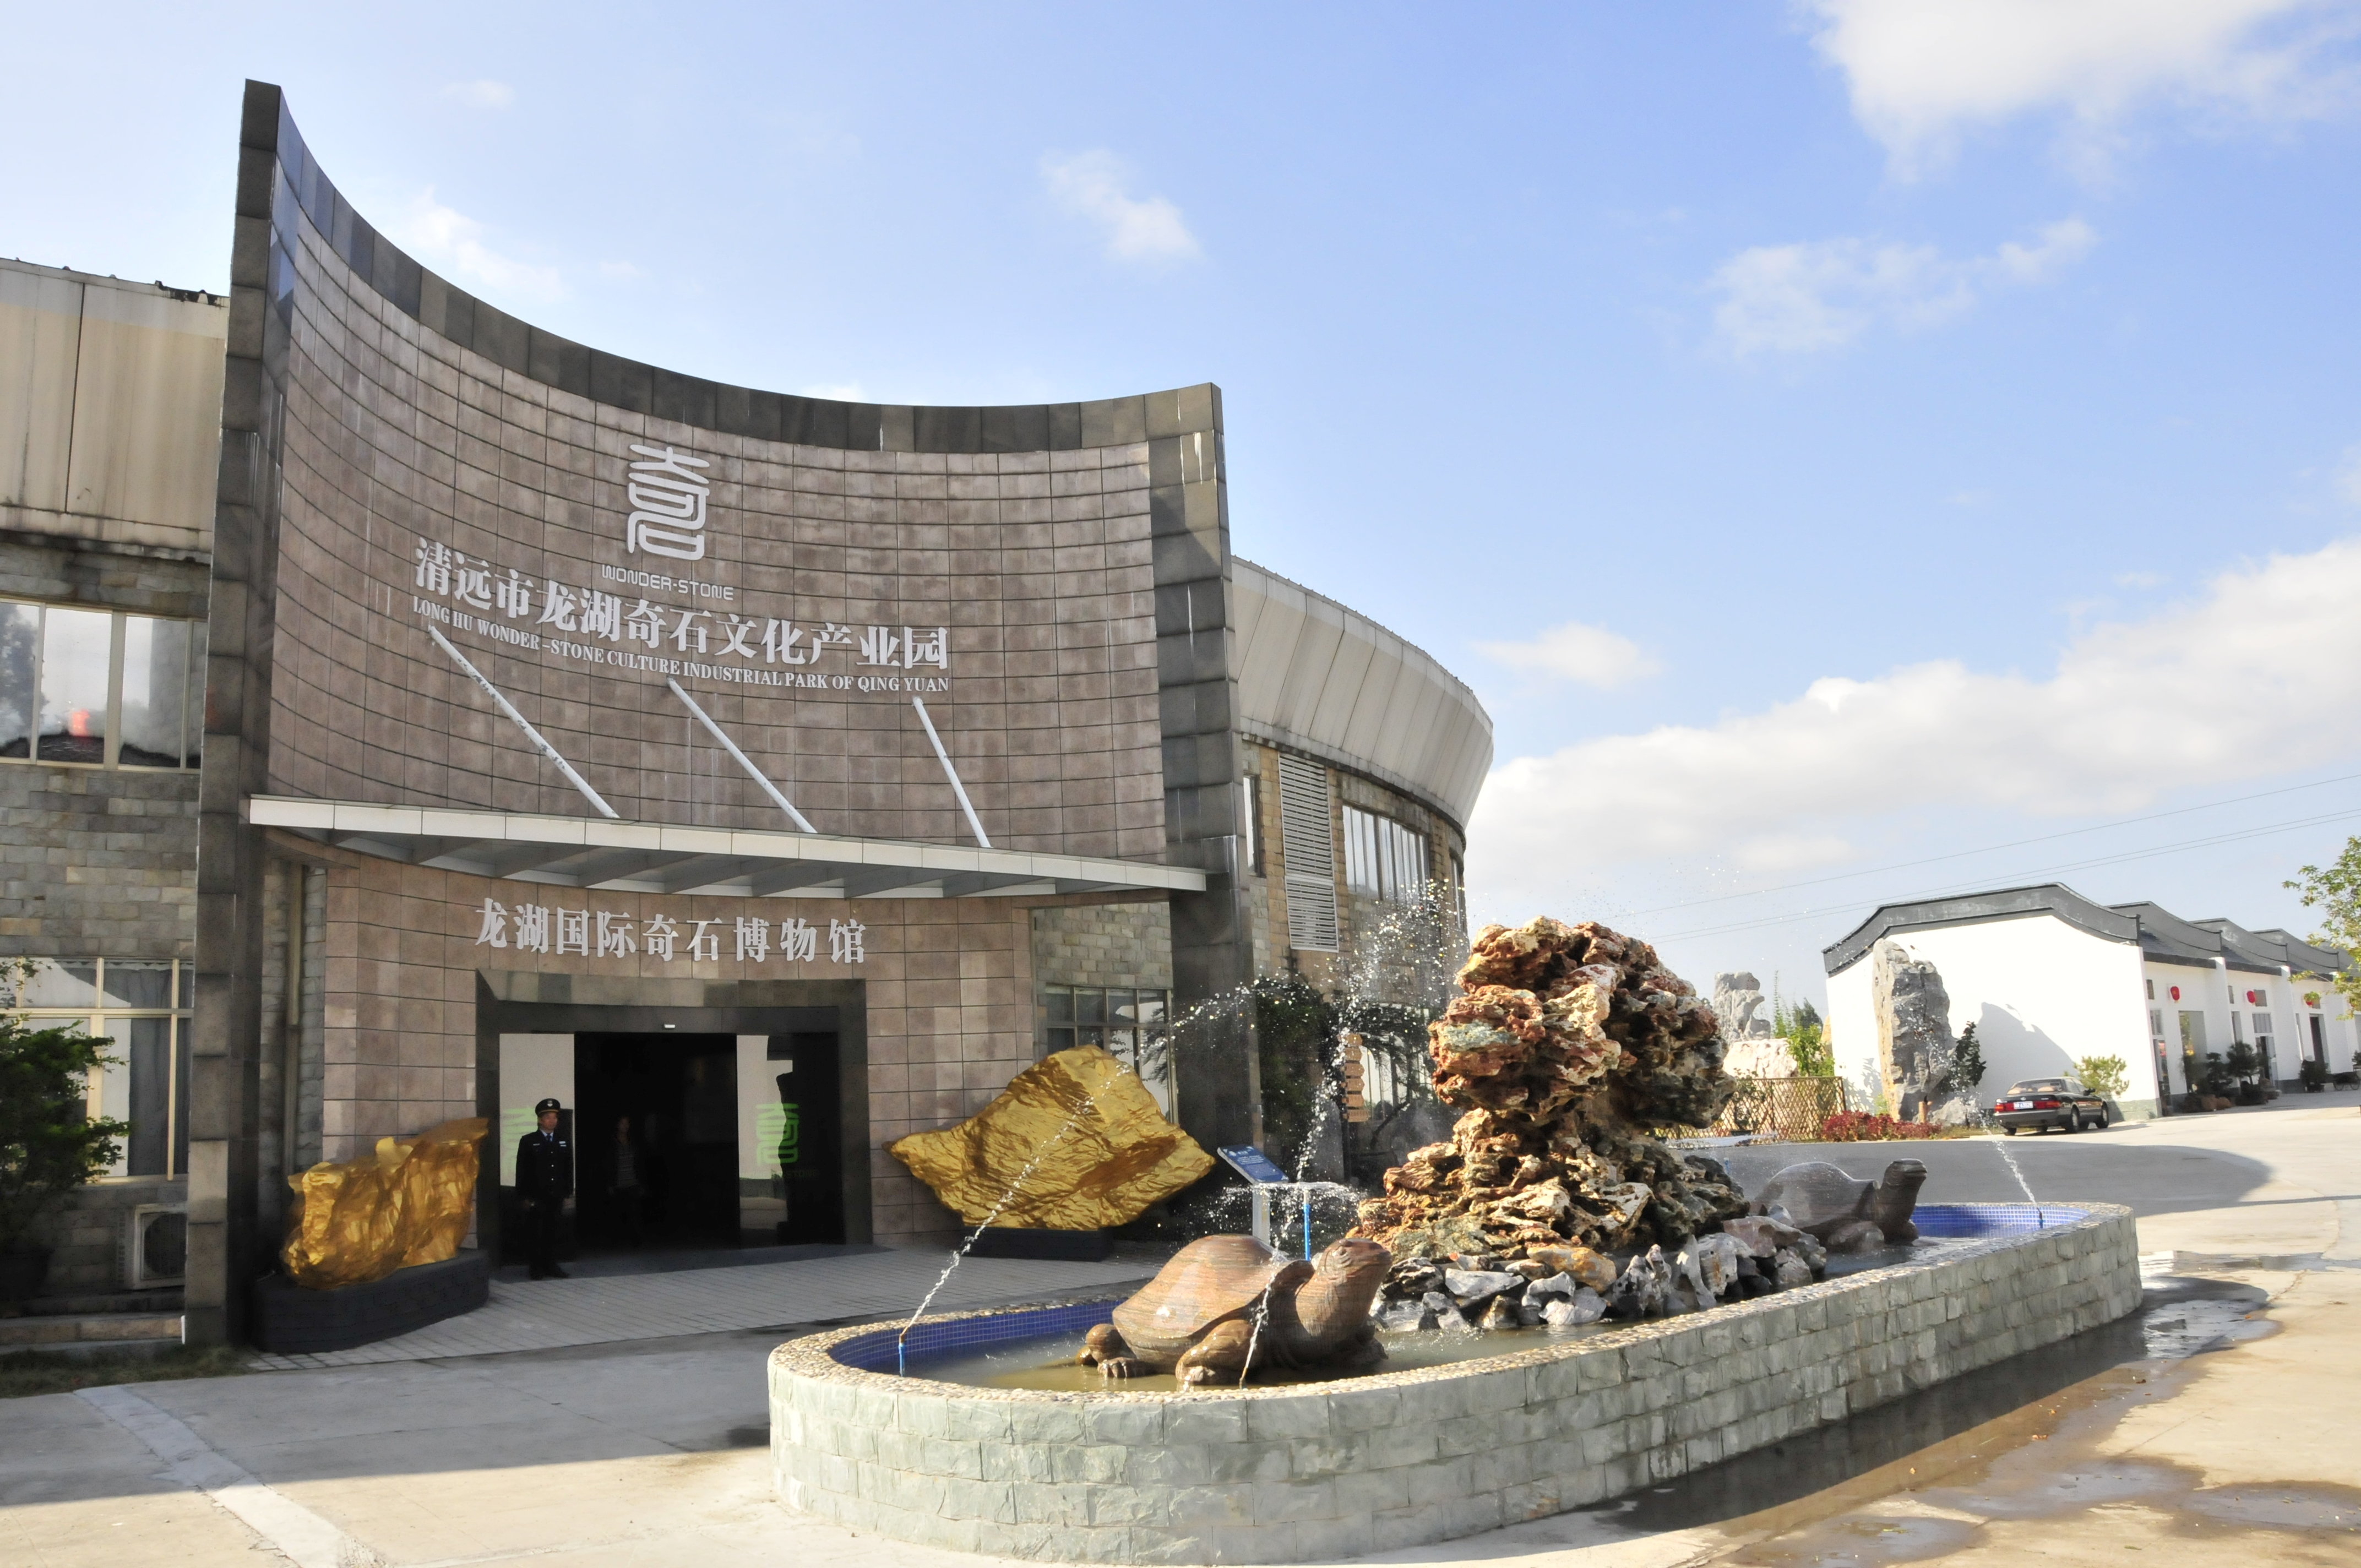 龙湖国际奇石博物馆，收藏奇石古玩200多种、18000余件.JPG